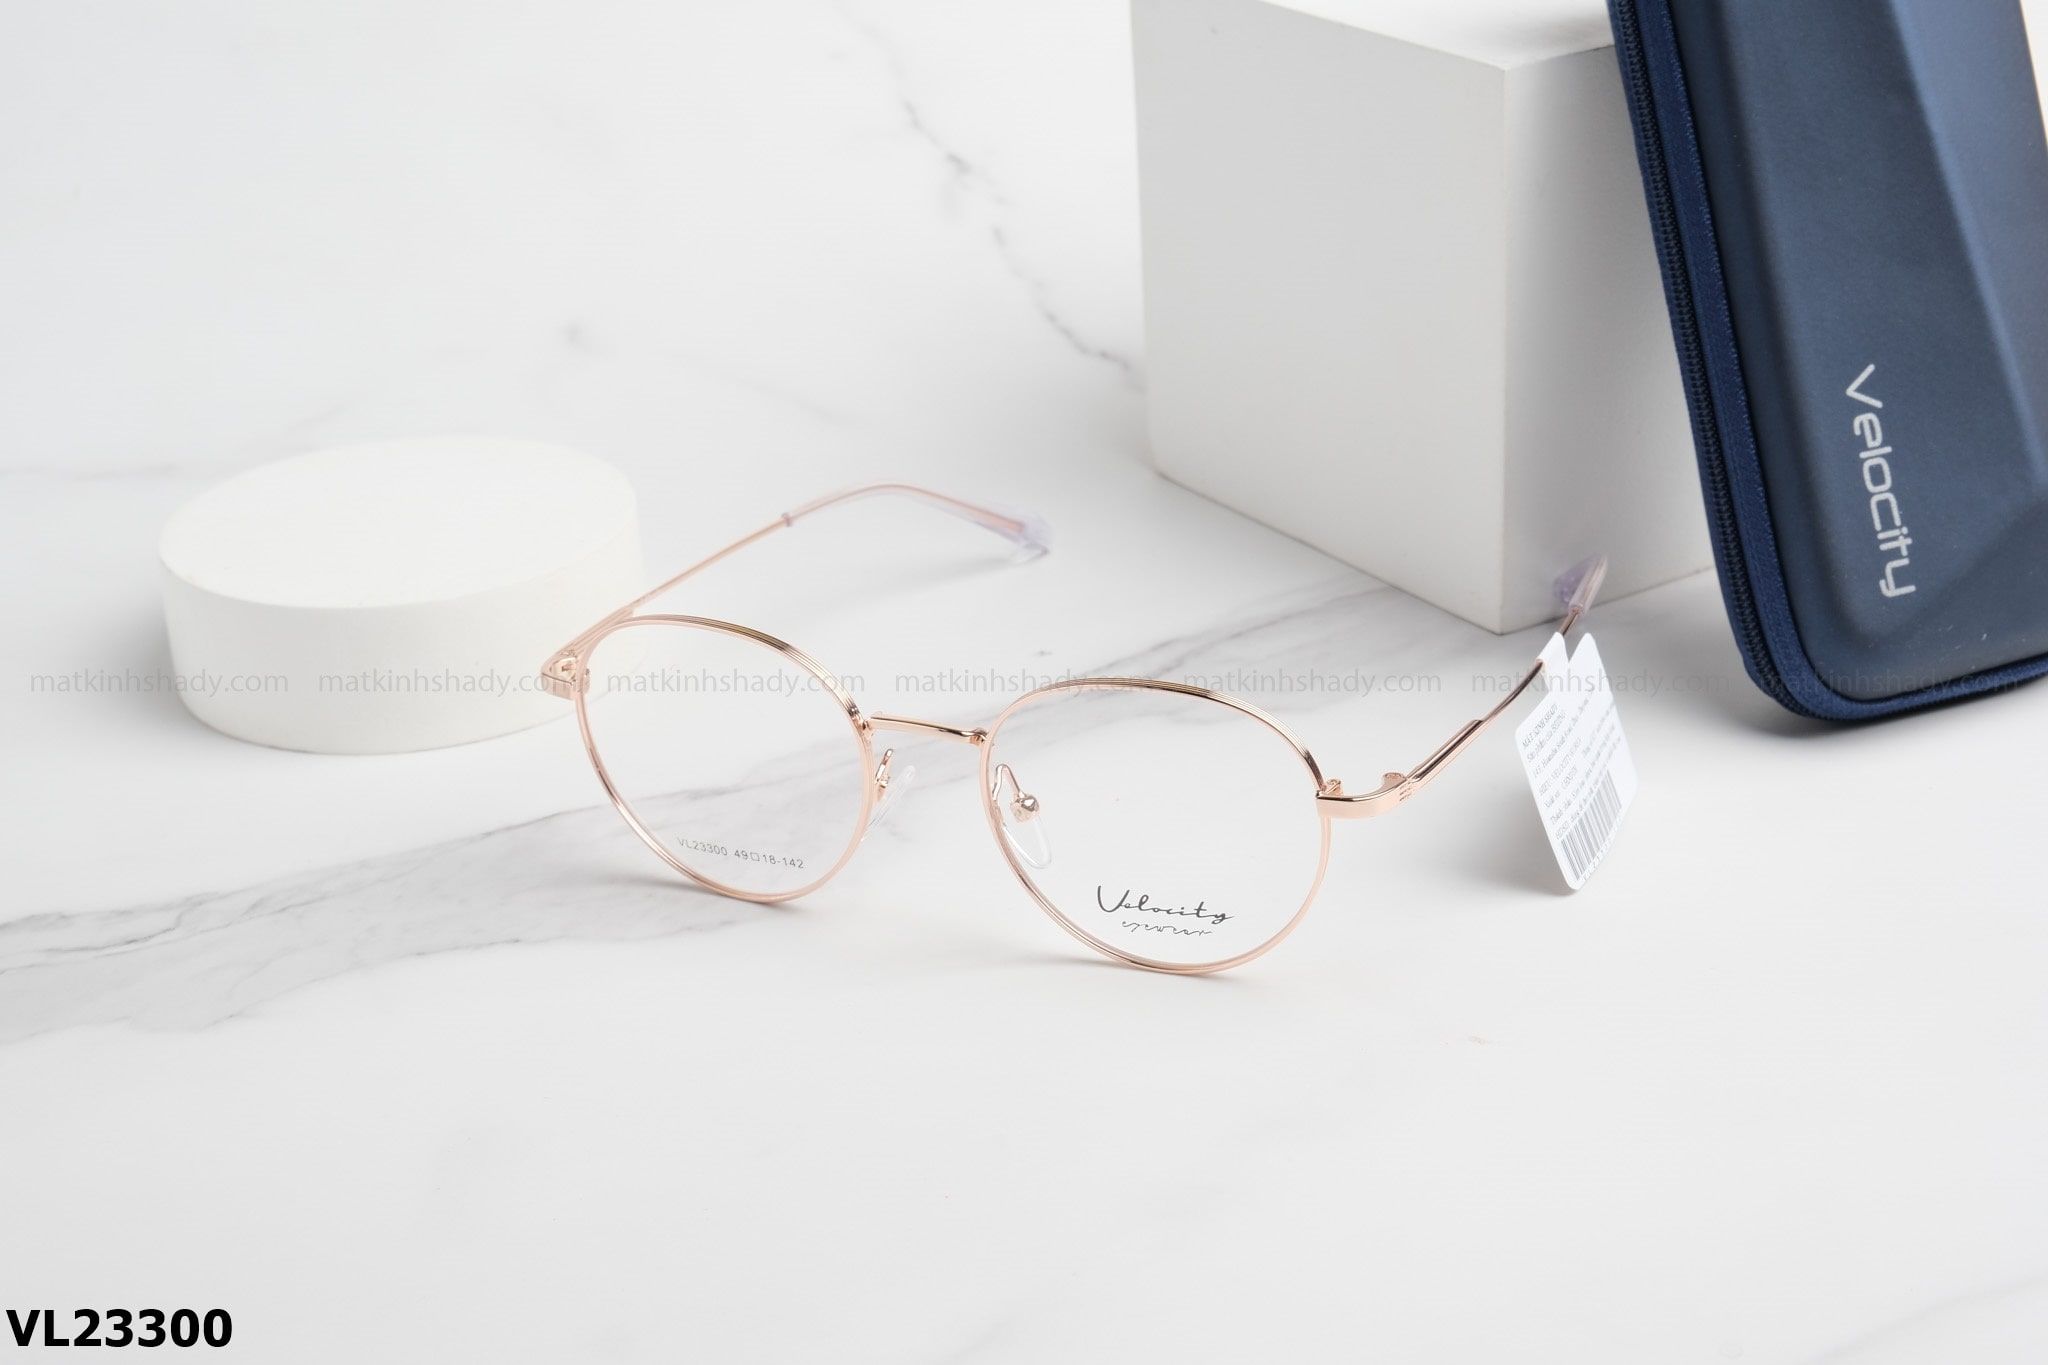  Velocity Eyewear - Glasses - VL23300 